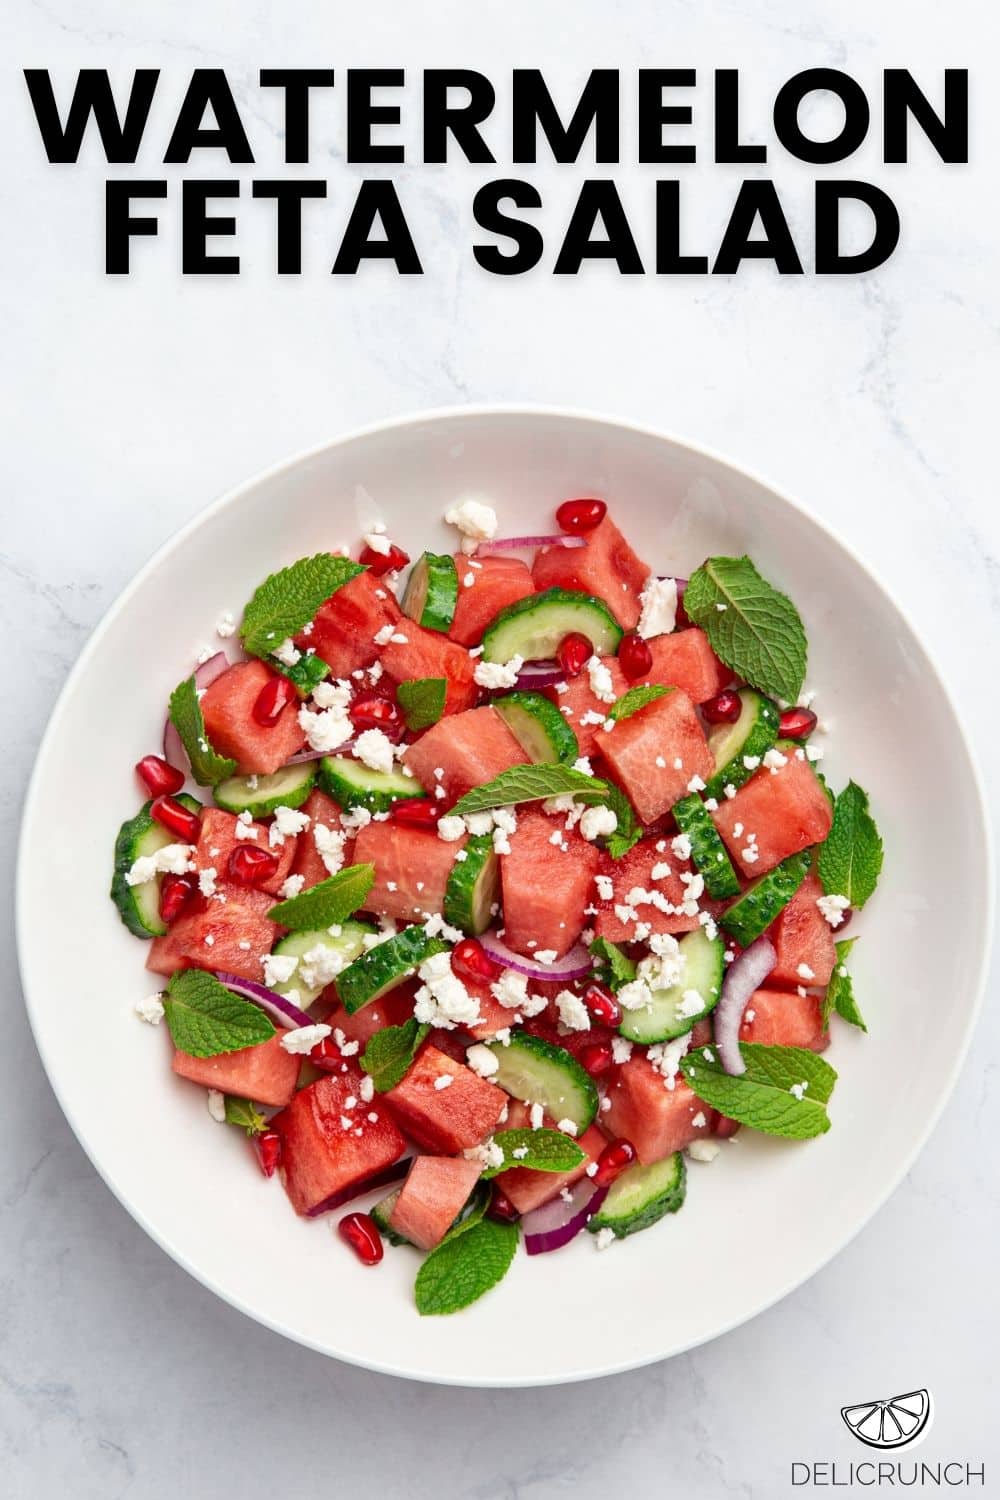 watermelon feta salad by delicrunch recipes